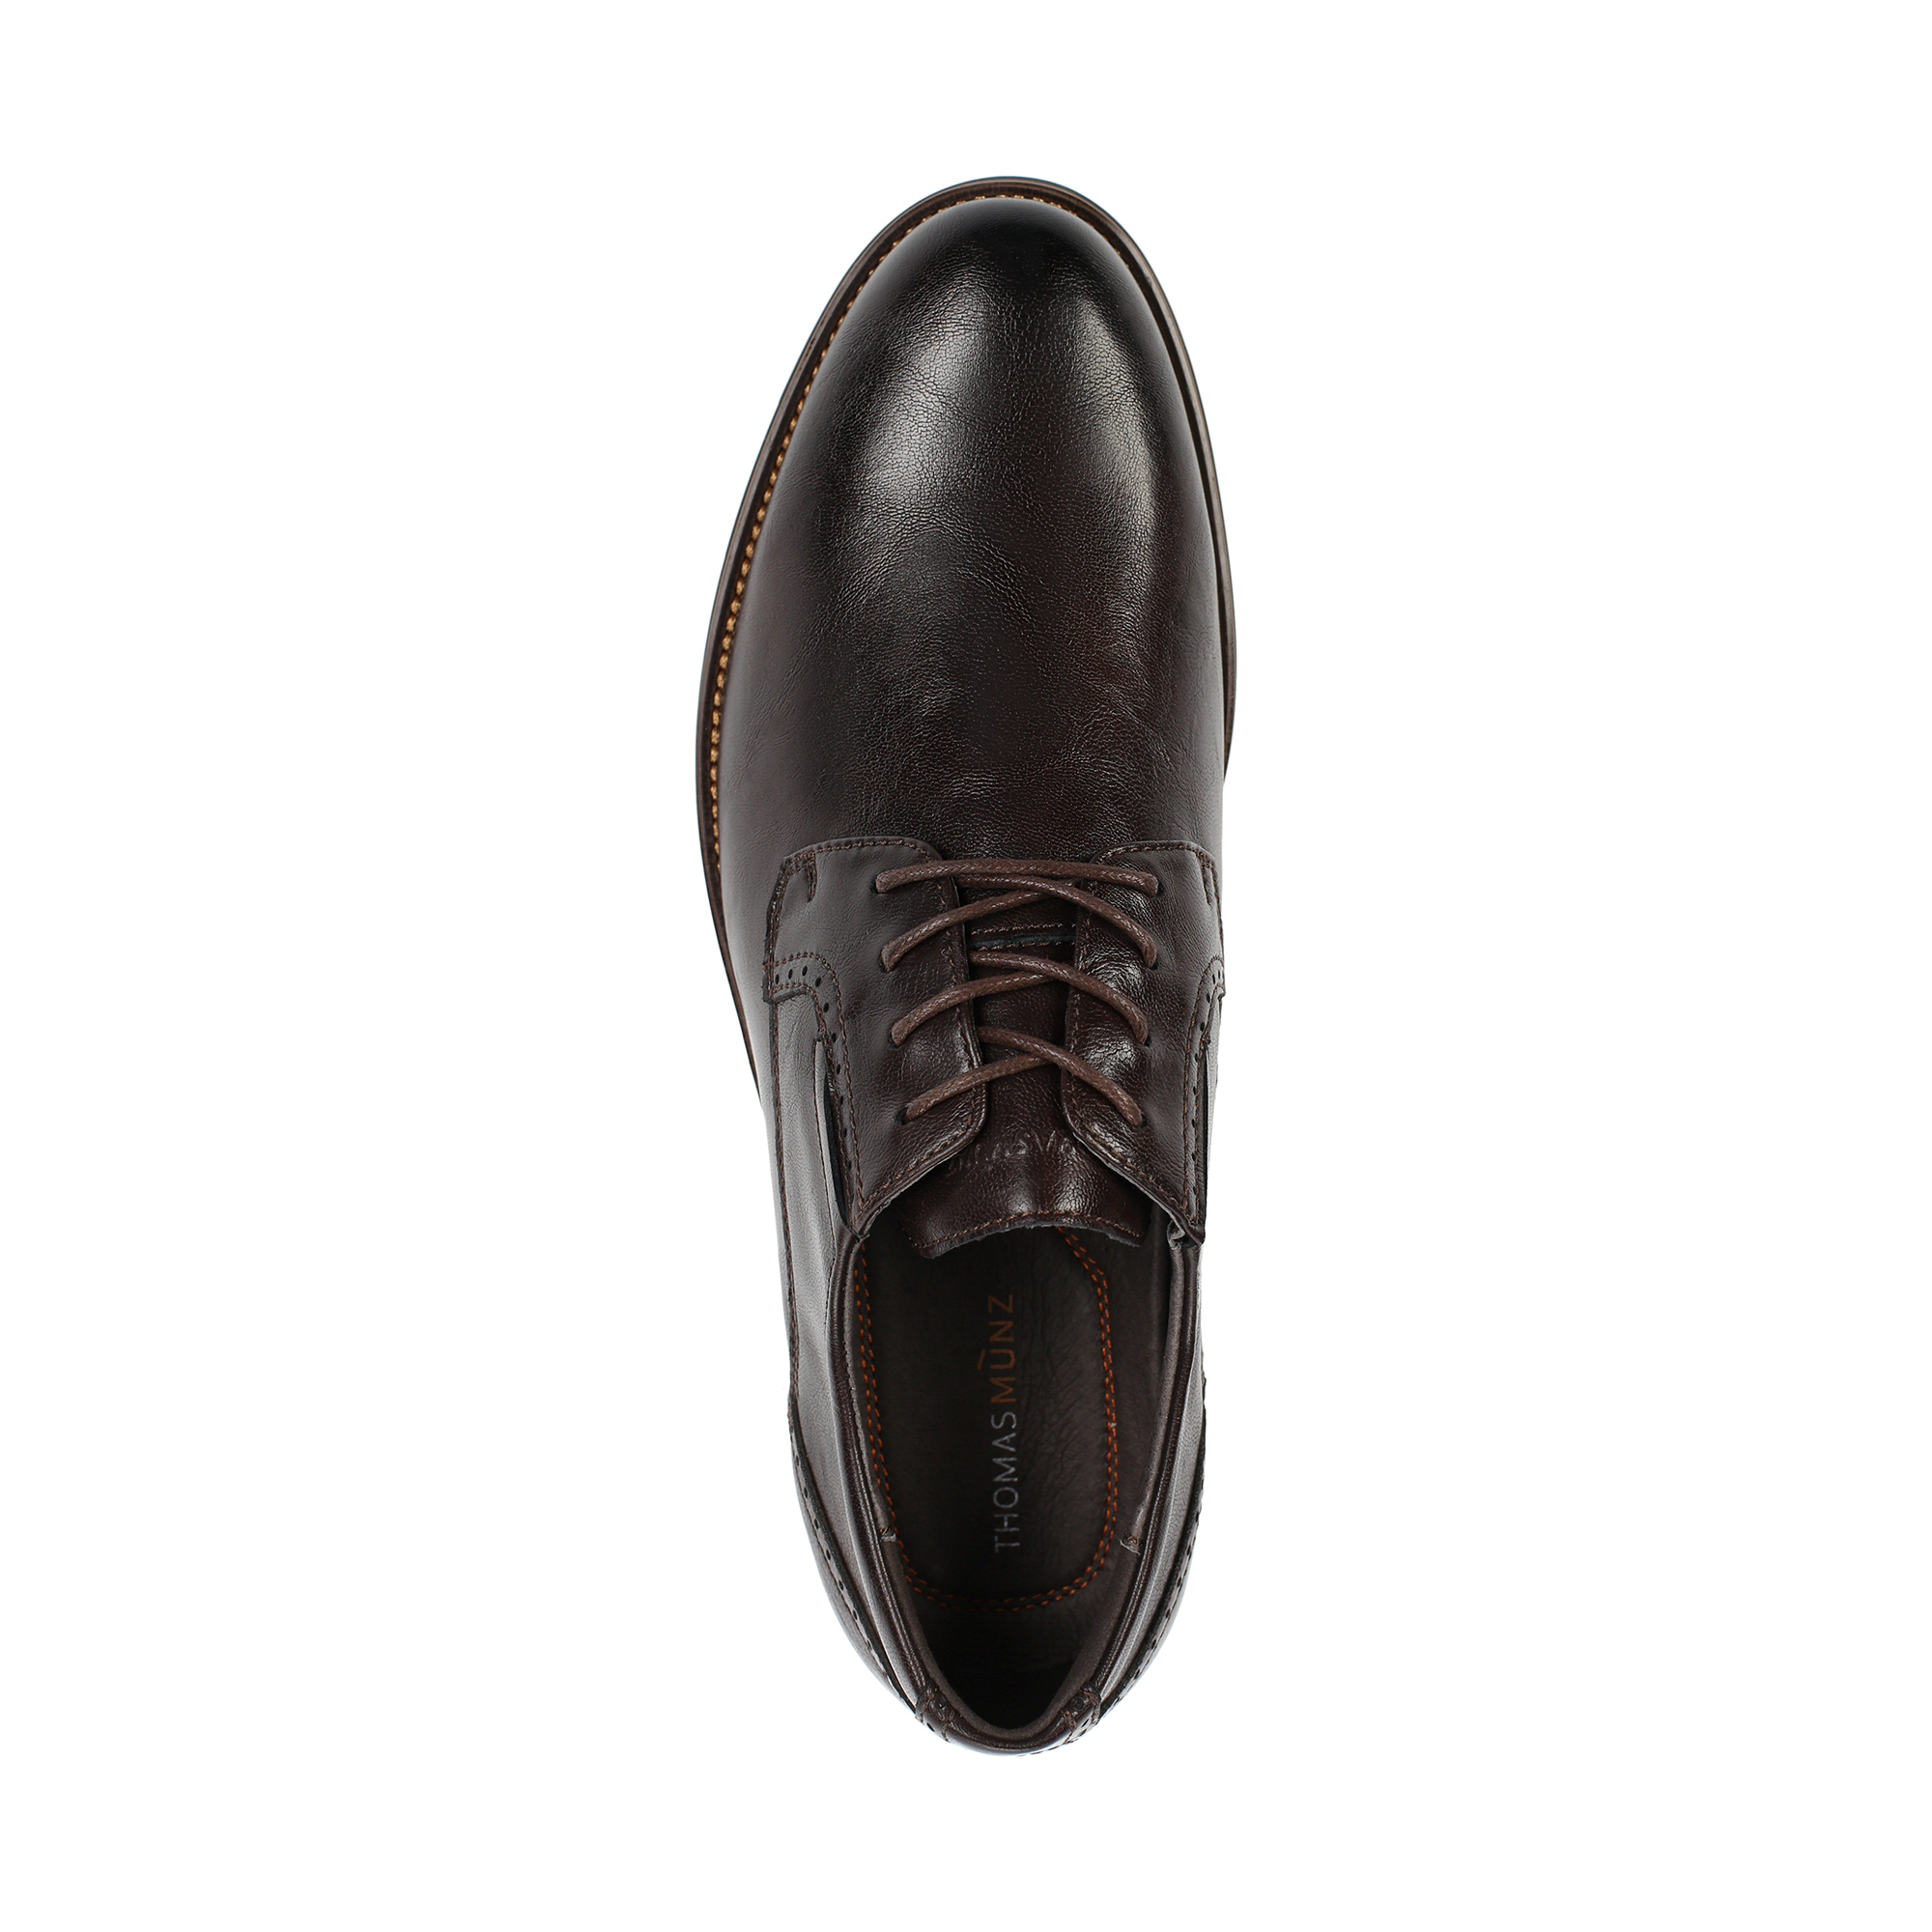 Туфли/полуботинки Thomas Munz 098-806B-1609, цвет коричневый, размер 45 - фото 5